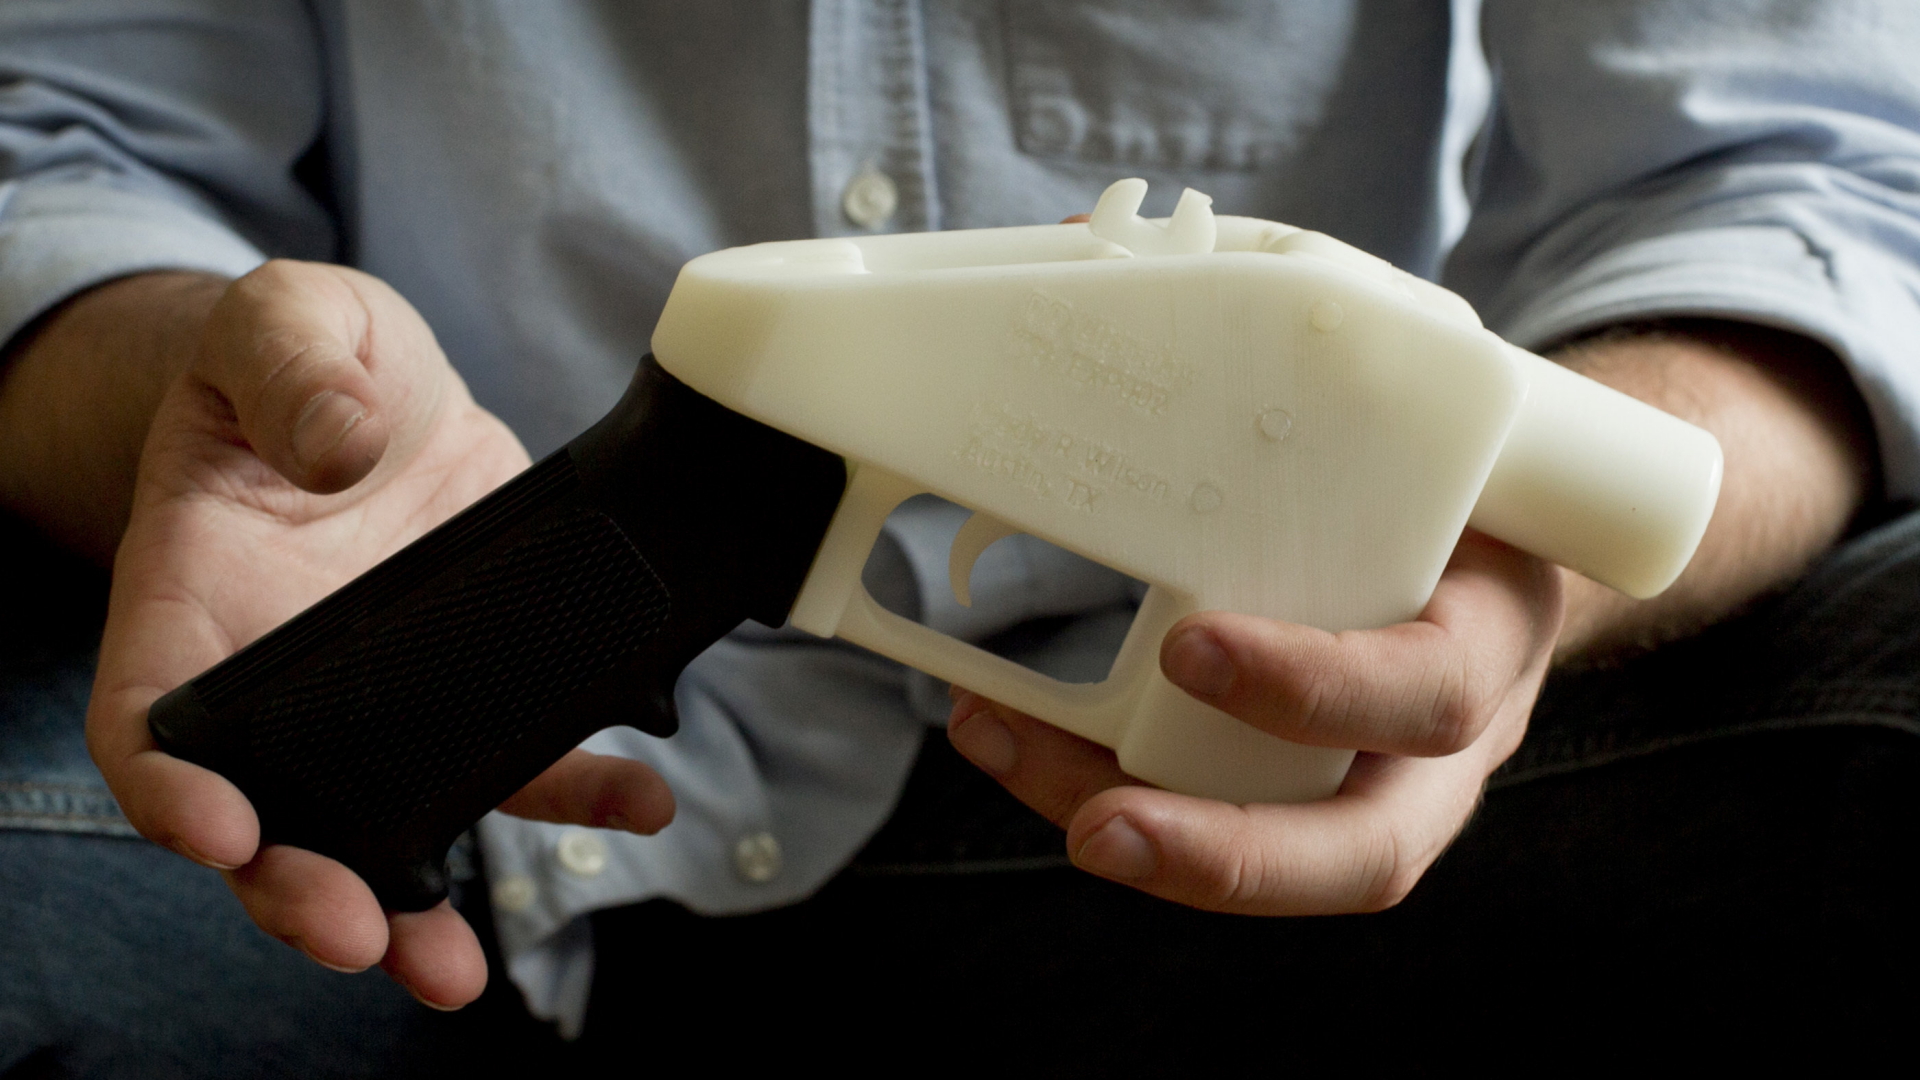 Ein Mann hält eine Waffe in der Hand, die per 3D-Druck entstanden ist.